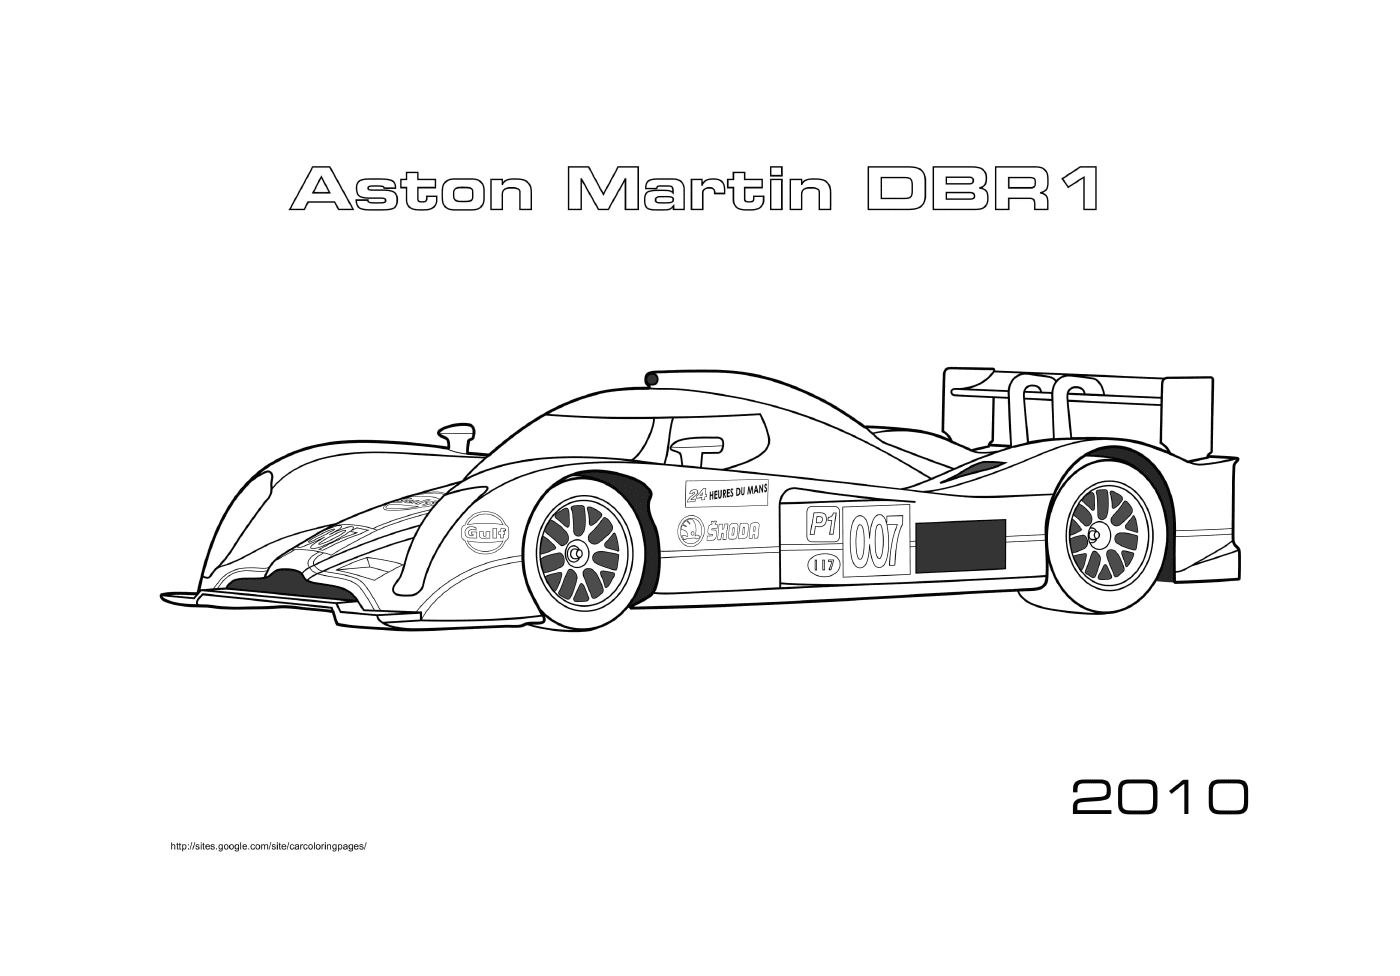  Aston Martin DBR1 2010, Formula 1 car 